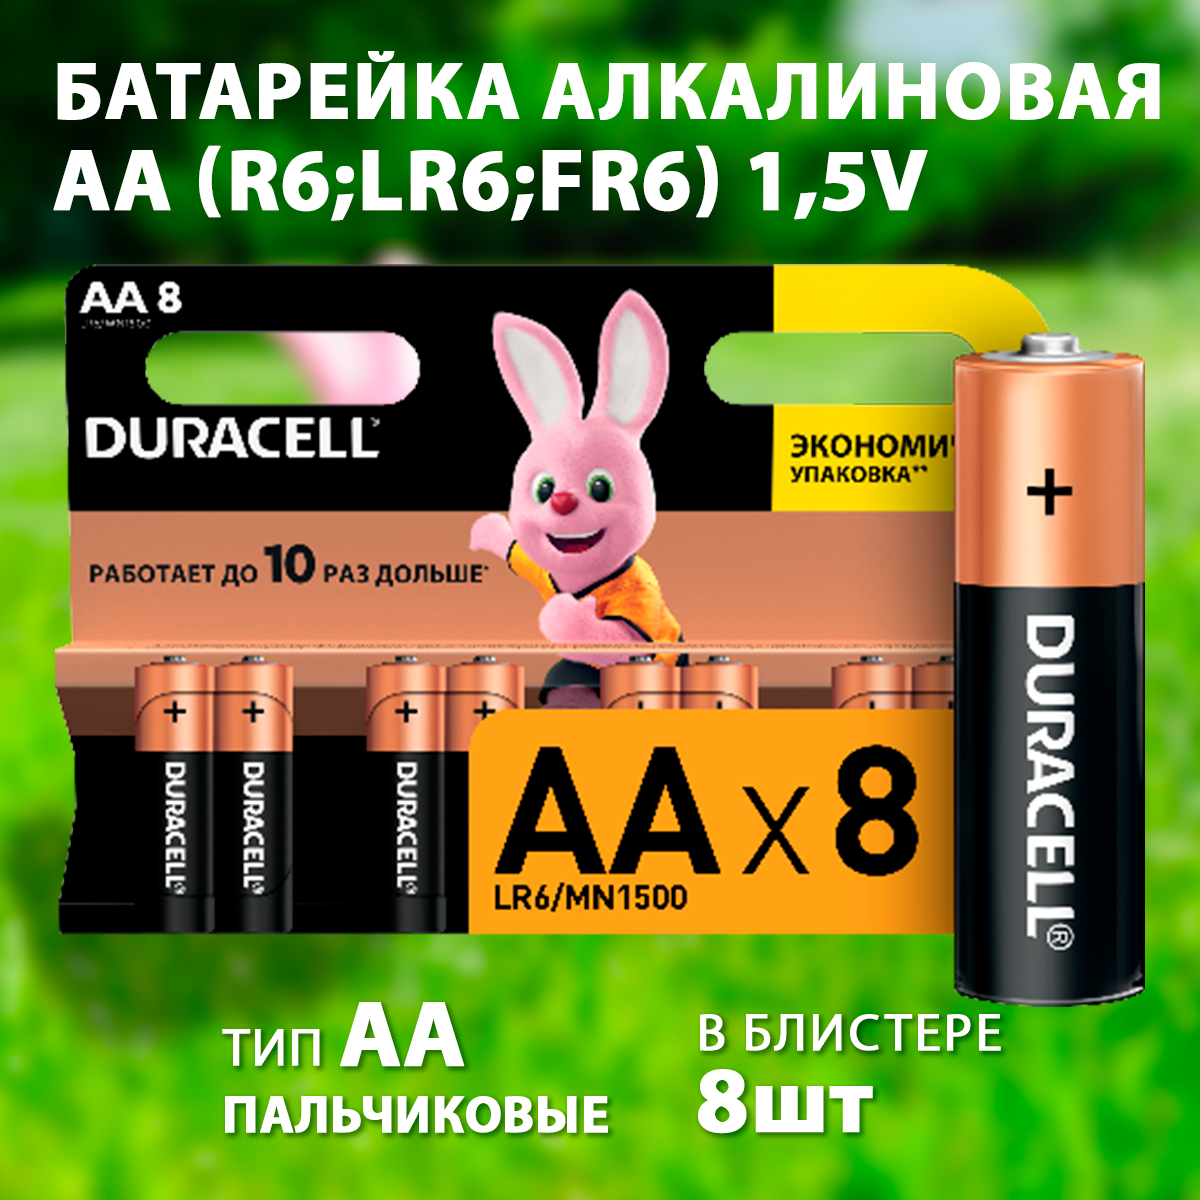 Изображение 5006201/5015242 | Батарейка алкалиновая AA (R6;LR6;FR6) 1,5V (8 шт.) 5006201 в магазине ЭлектроМИР